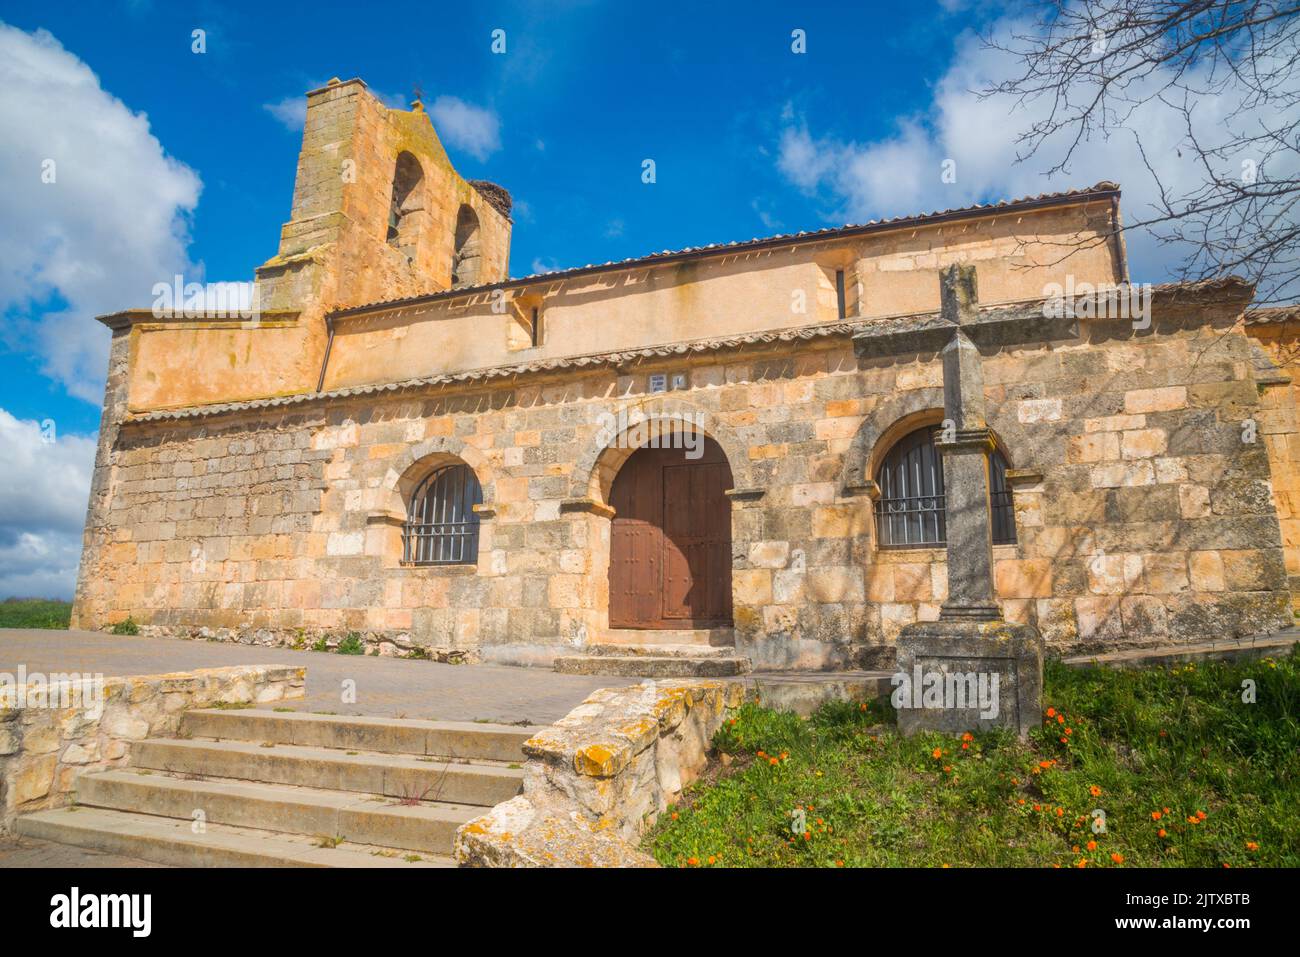 Facade of the church. Fresno de la Fuente, Segovia province, Castilla Leon, Spain. Stock Photo